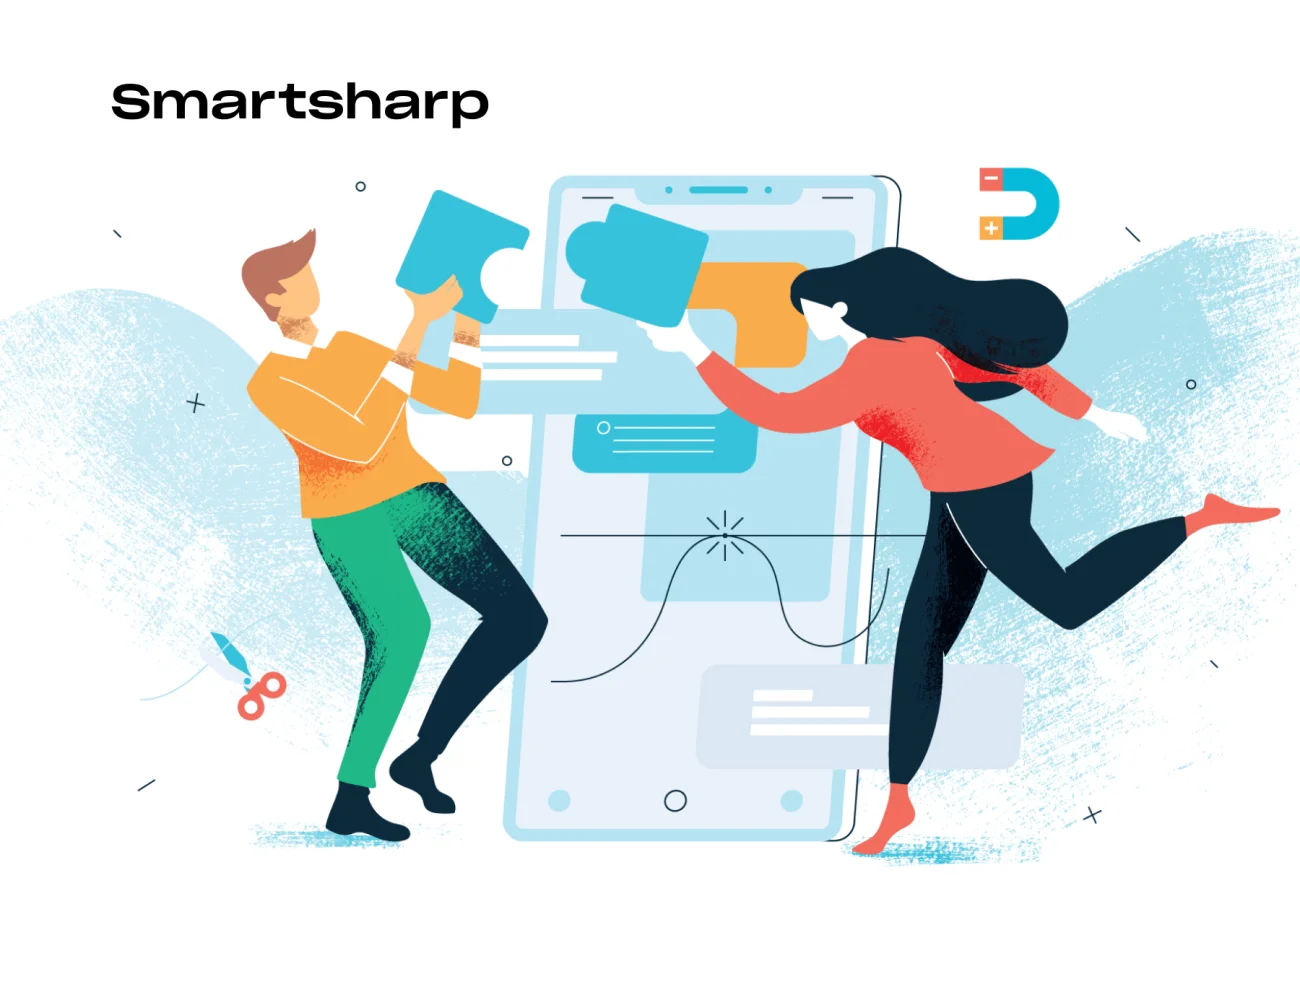 Smartsharp Illustrations 20款IT趣味故事商业插画落地页插图-人物插画、场景插画、学习生活、插画、插画功能、插画风格、教育医疗、概念创意、线条手绘、职场办公、营销创业、趣味漫画-到位啦UI